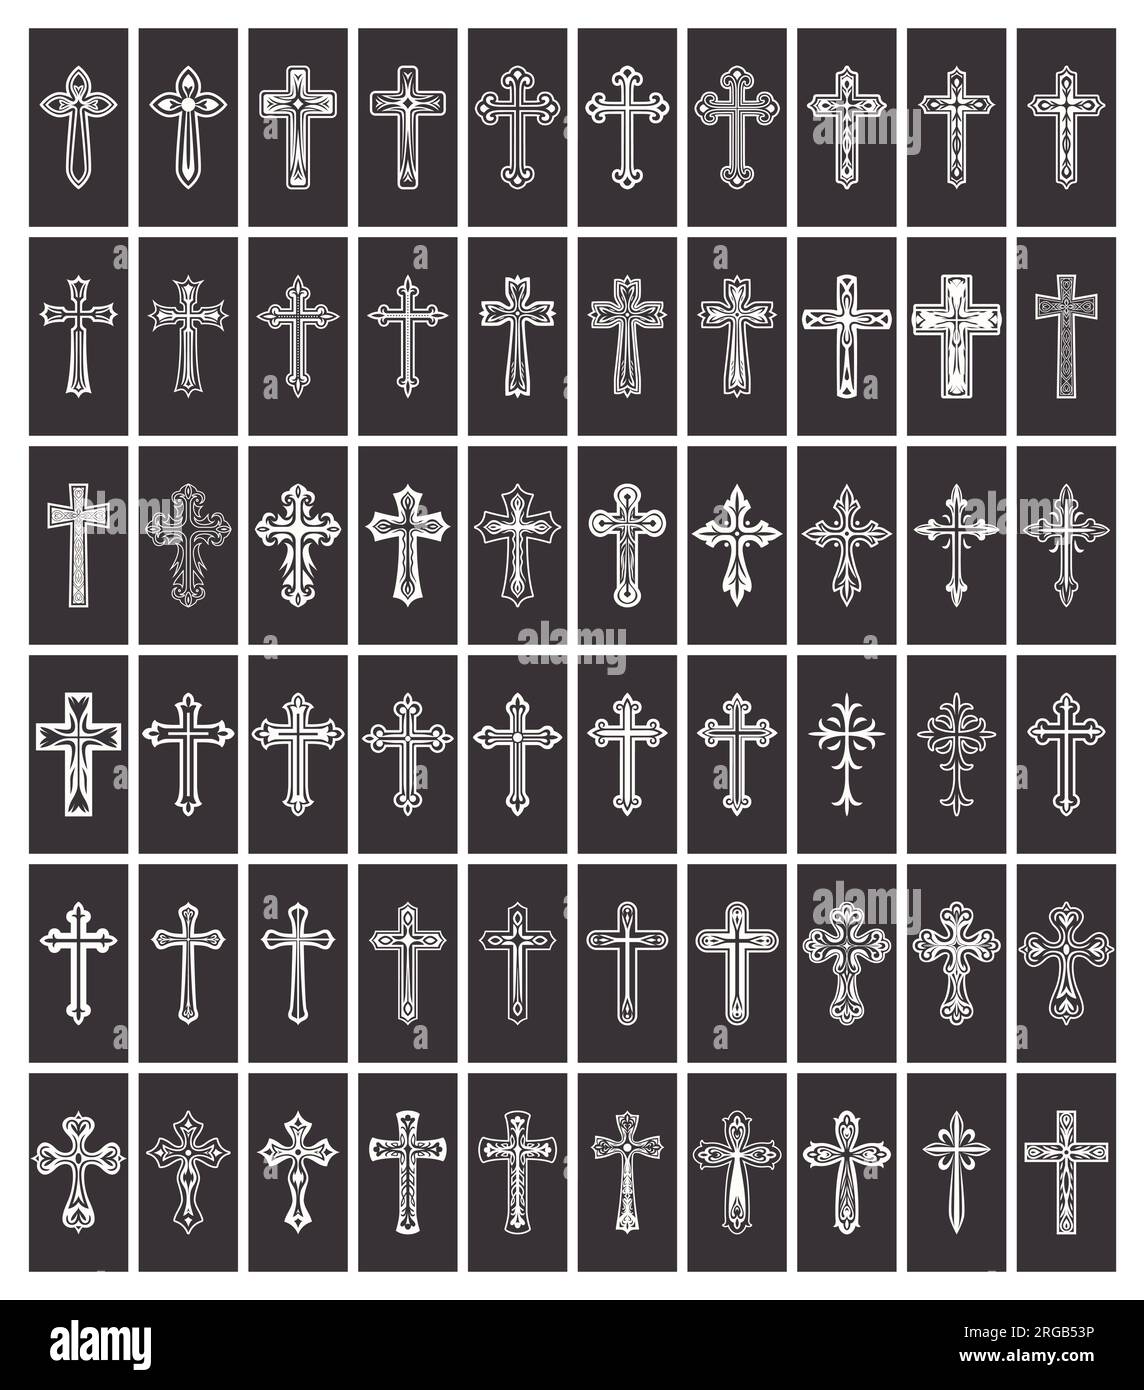 Icone Flat Vector Black and White Christian Cross. Linea silhouette ritagliata Black Christian Crosses Collection Isolated. Illustrazione Vettoriale